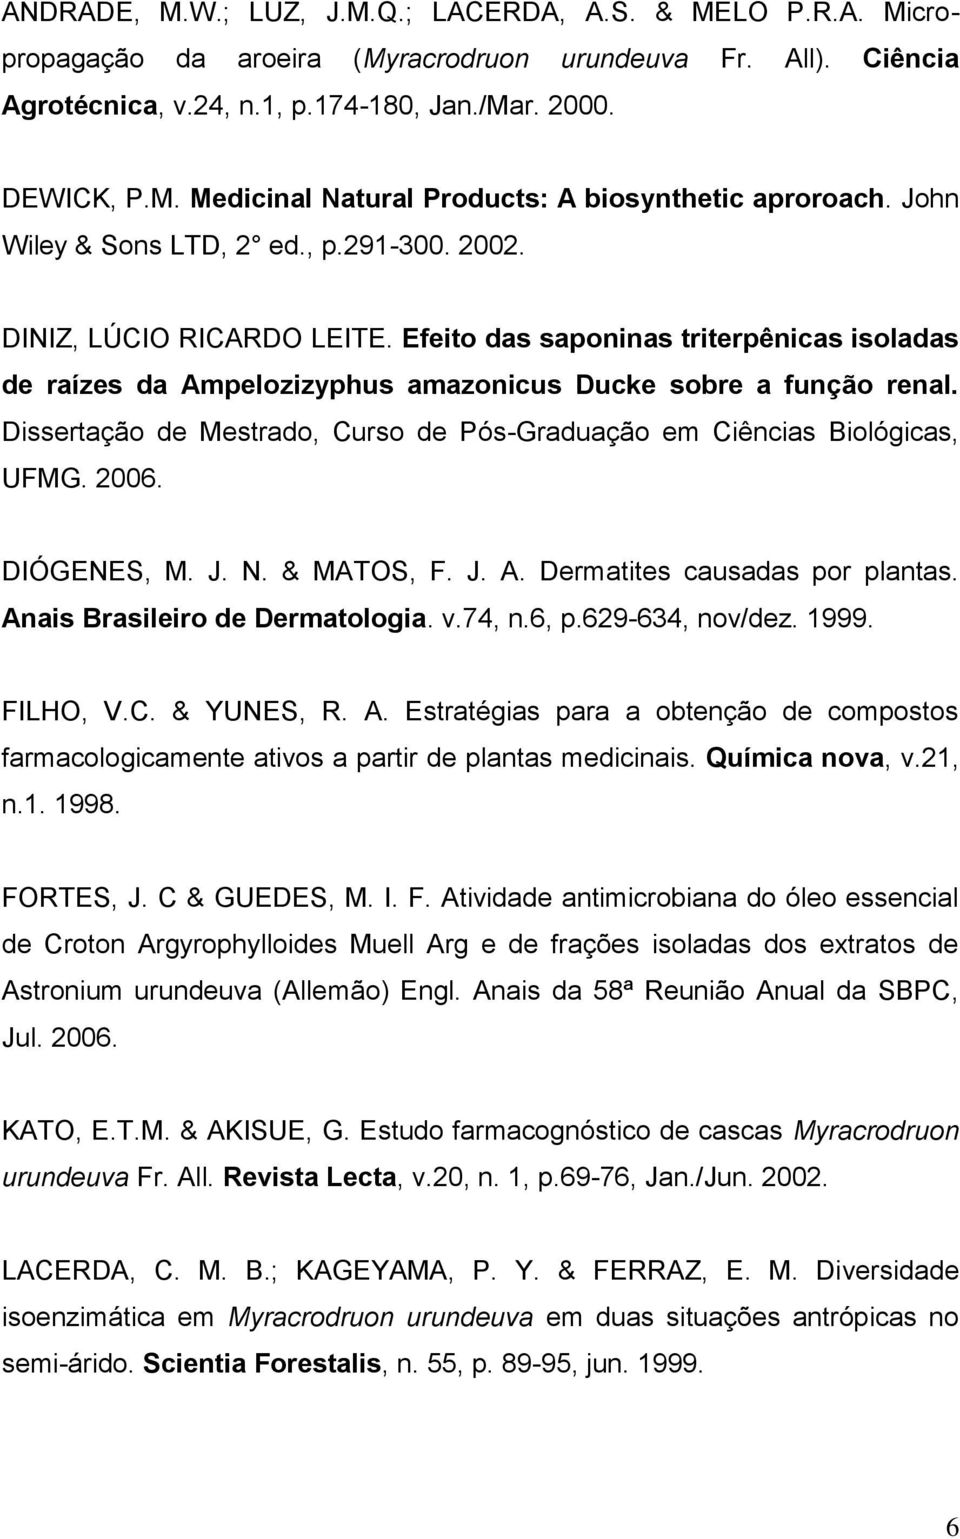 Dissertação de Mestrado, Curso de Pós-Graduação em Ciências Biológicas, UFMG. 2006. DIÓGENES, M. J. N. & MATOS, F. J. A. Dermatites causadas por plantas. Anais Brasileiro de Dermatologia. v.74, n.